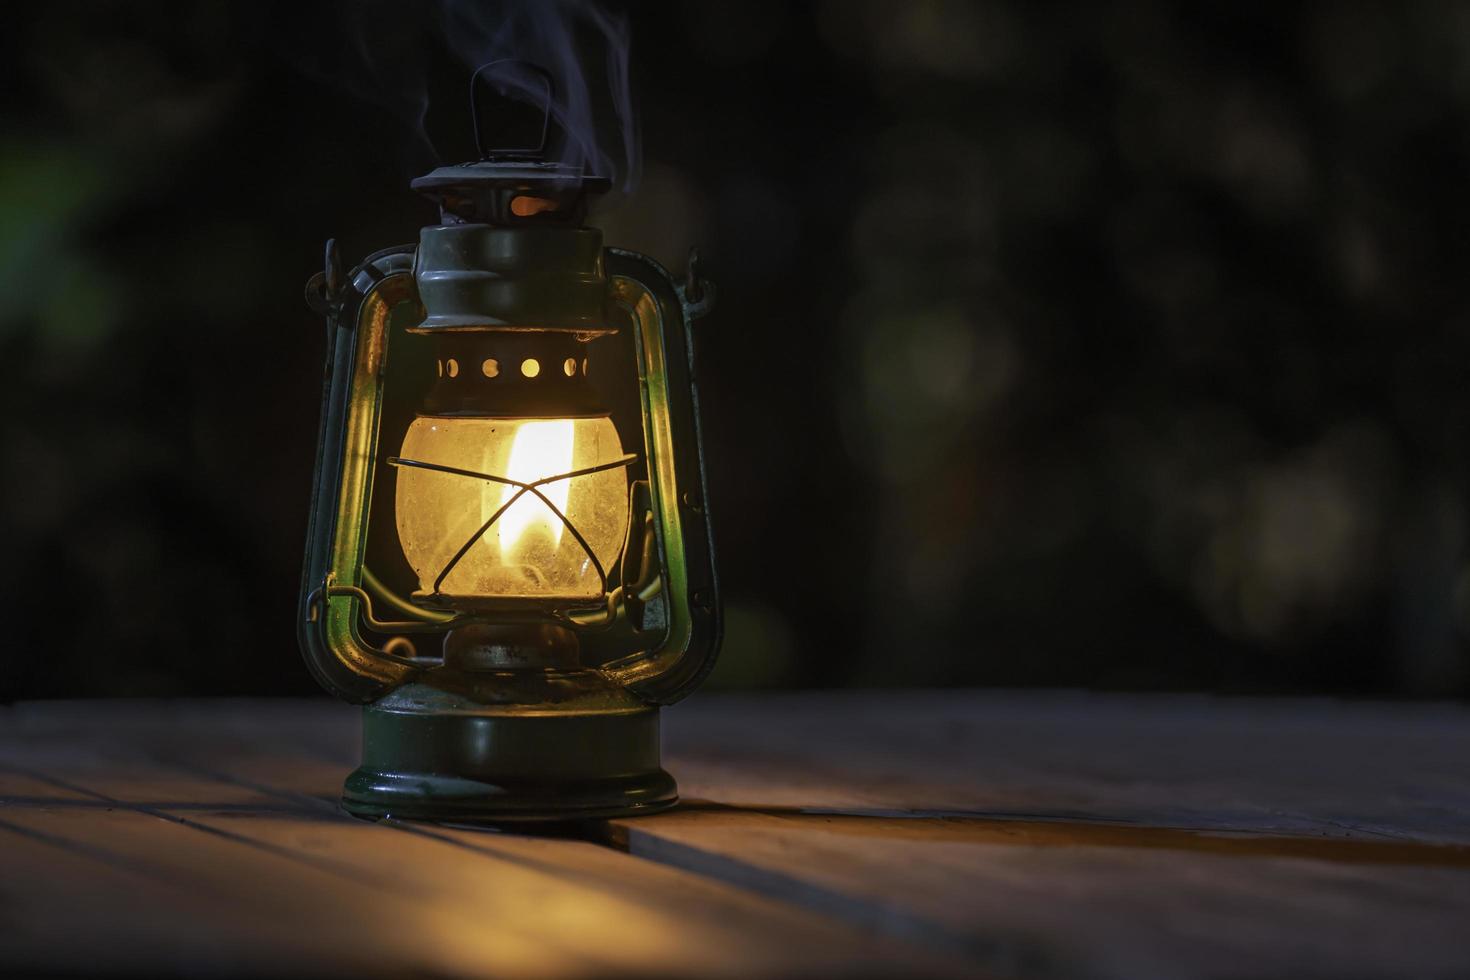 lampe à pétrole antique avec des lumières sur le plancher en bois la nuit photo